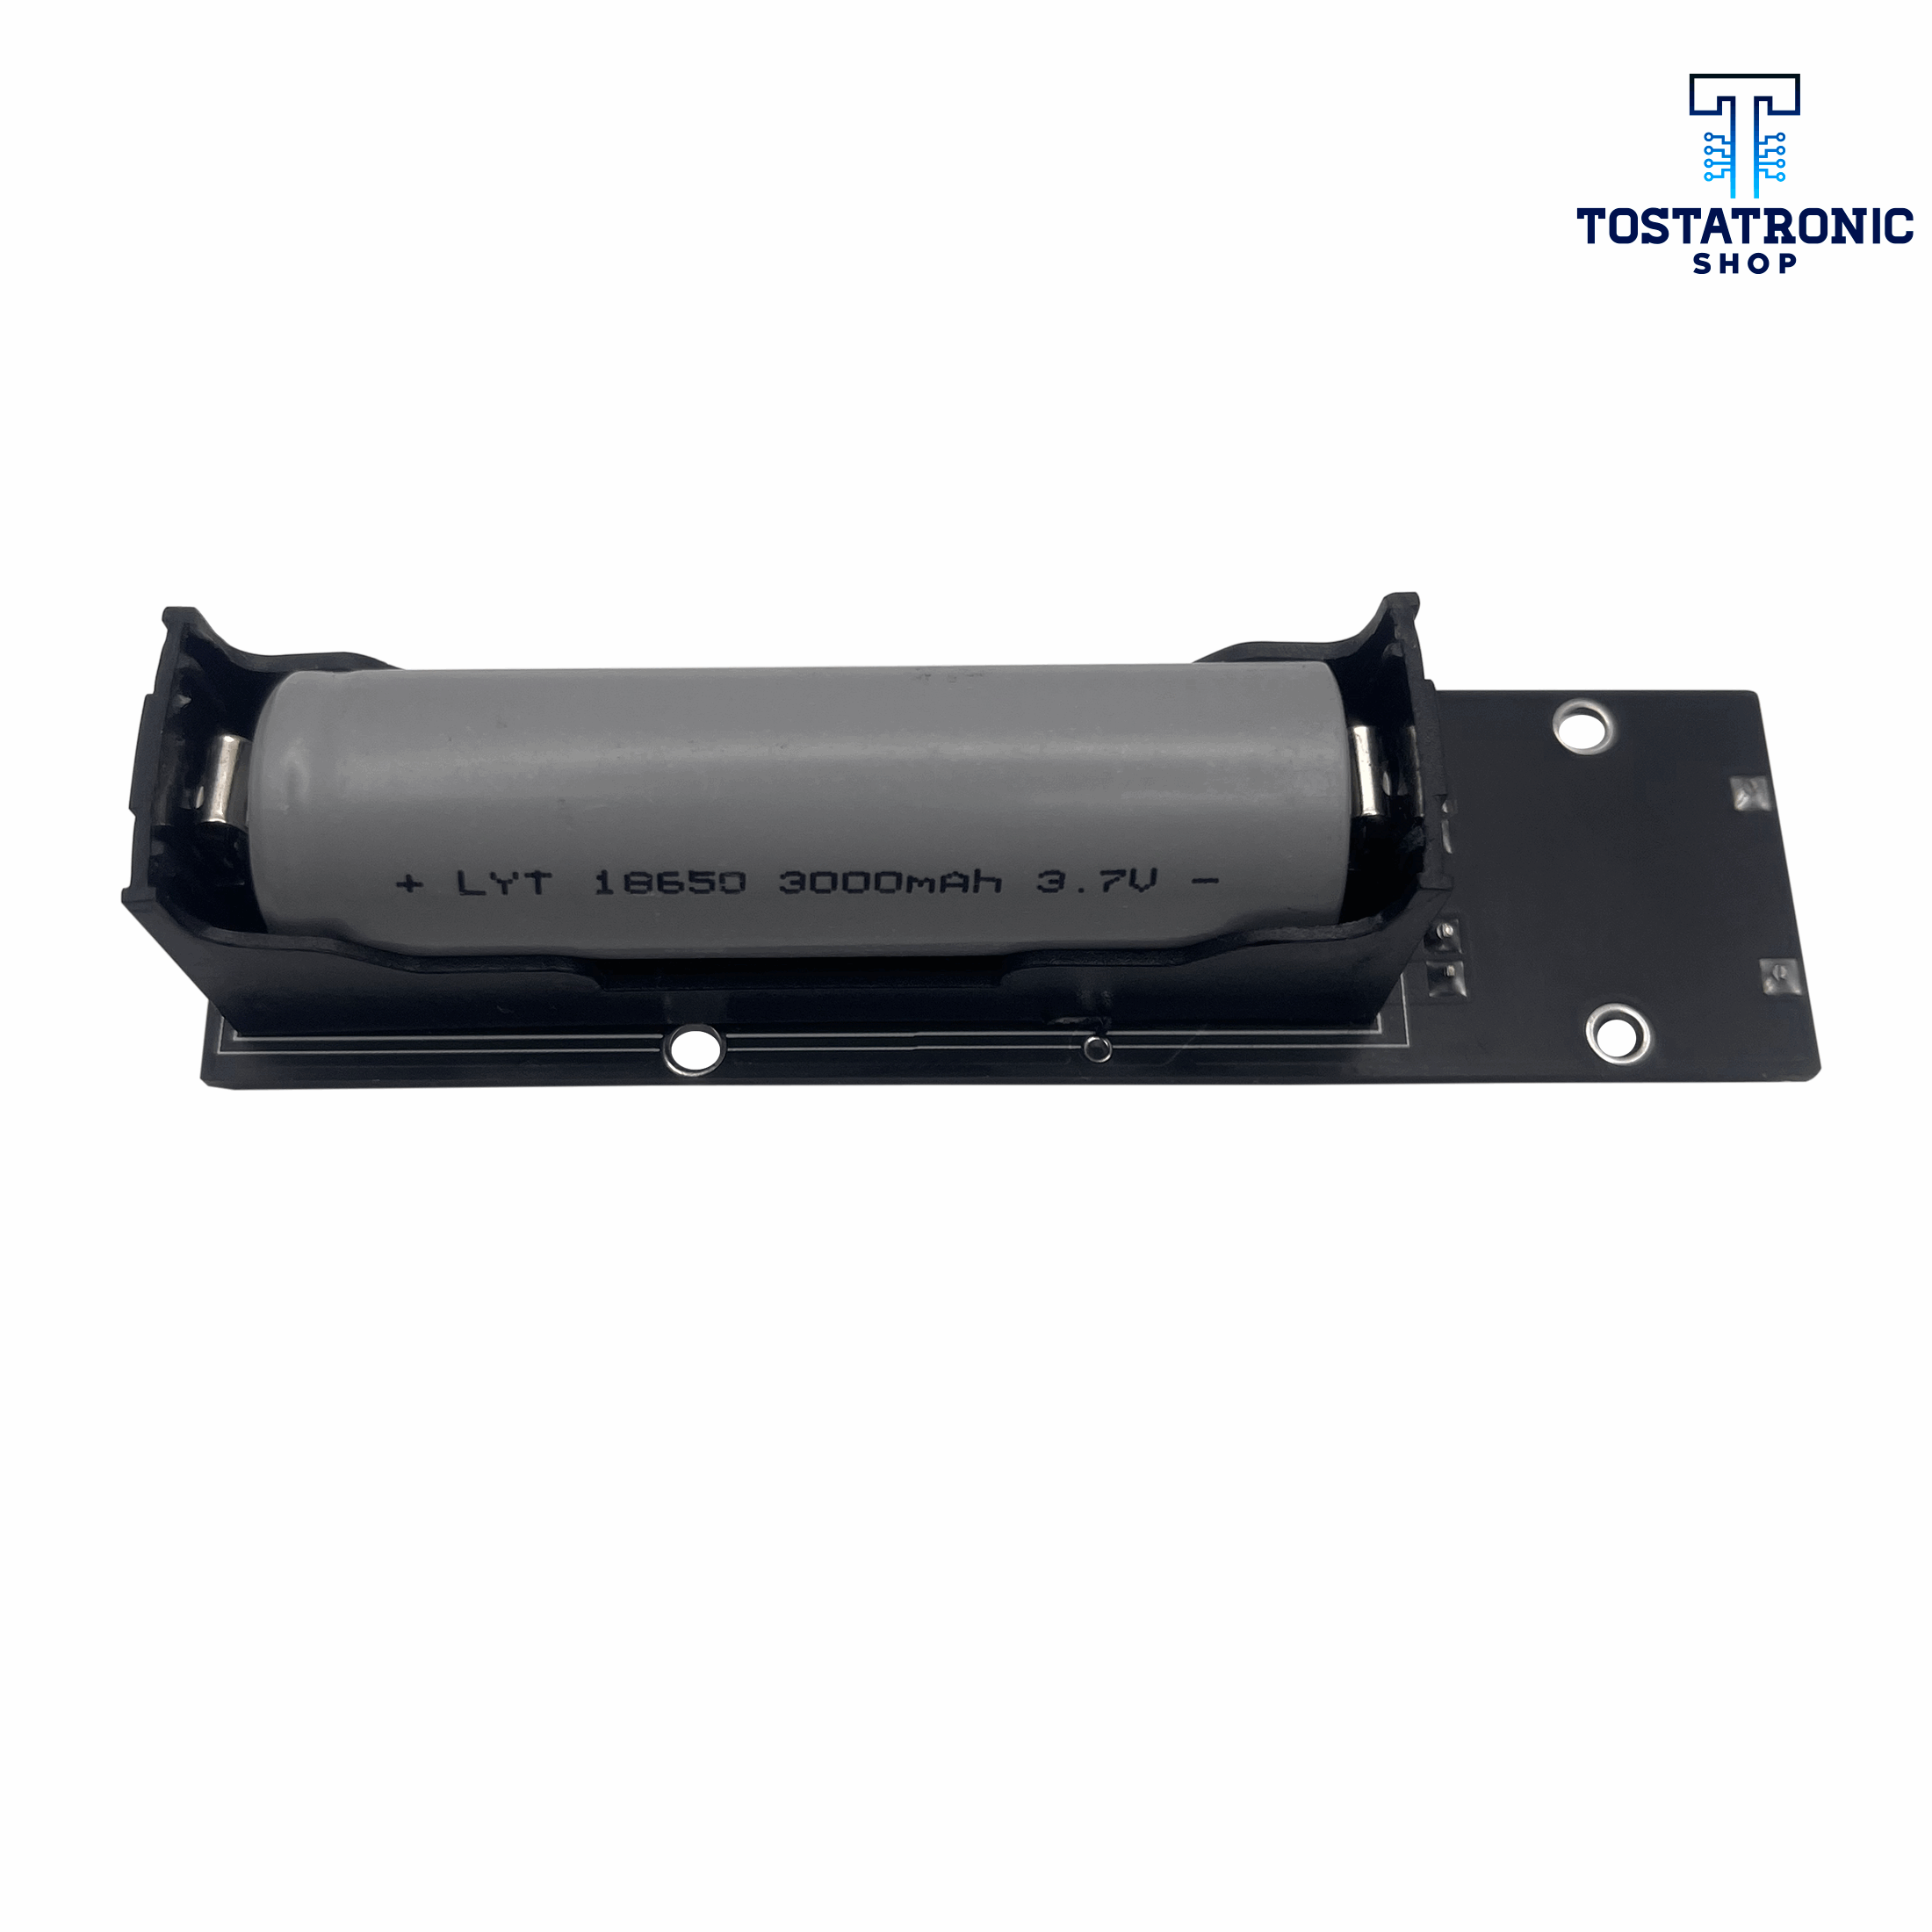 Cargador De Baterias Universal Con Indicador LED 18650 – Tostatronic